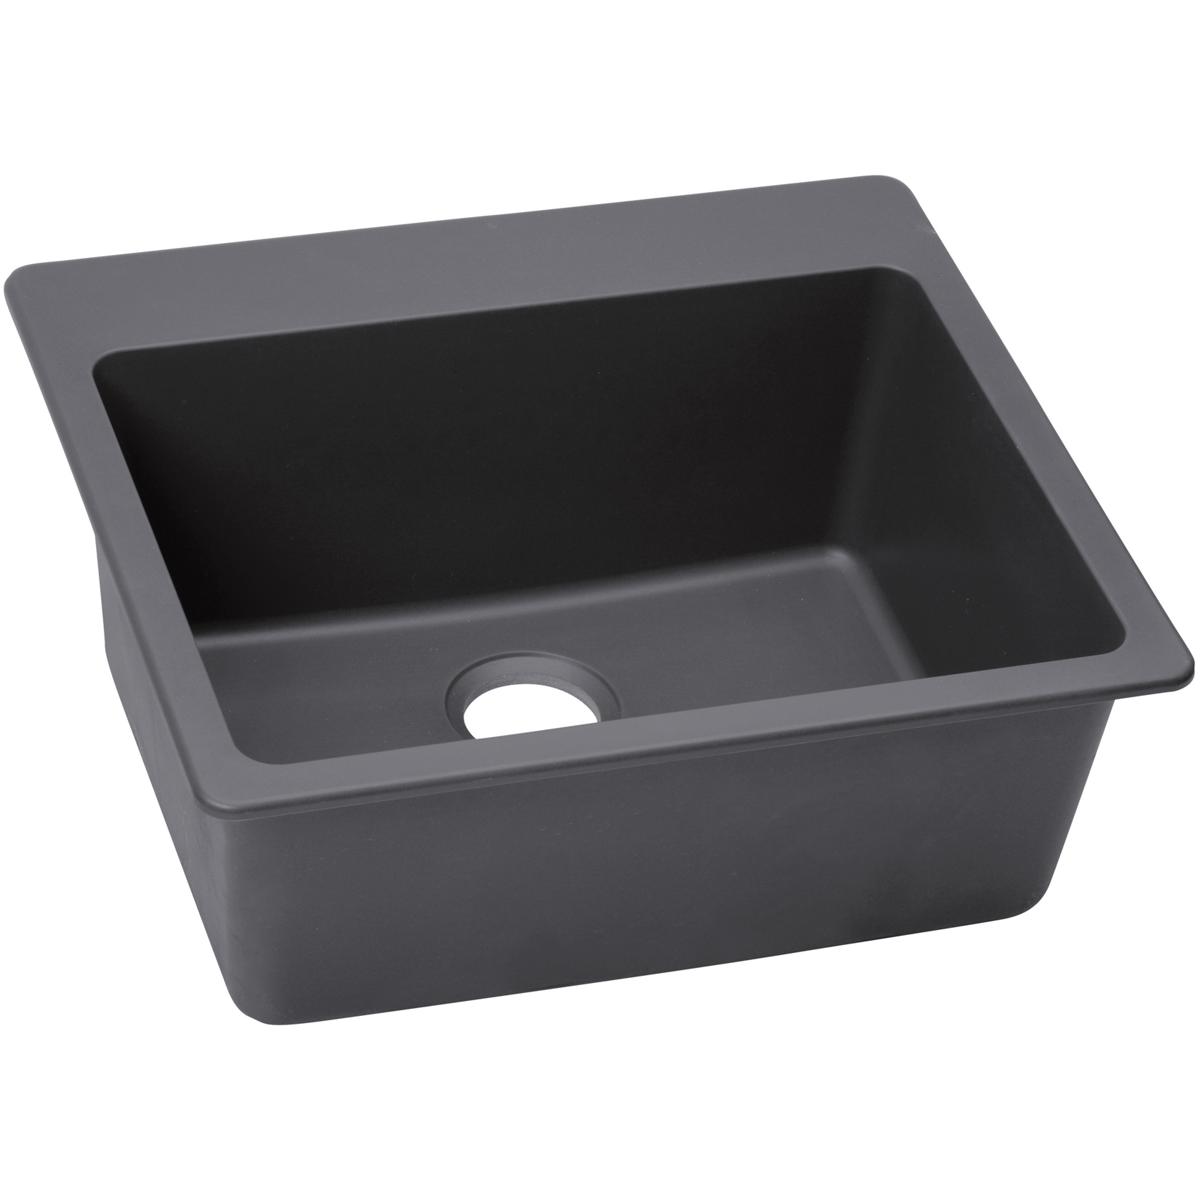 Elkay Quartz Luxe 25" x 22" x 9-1/2", Single Bowl Drop-in Sink, Charcoal